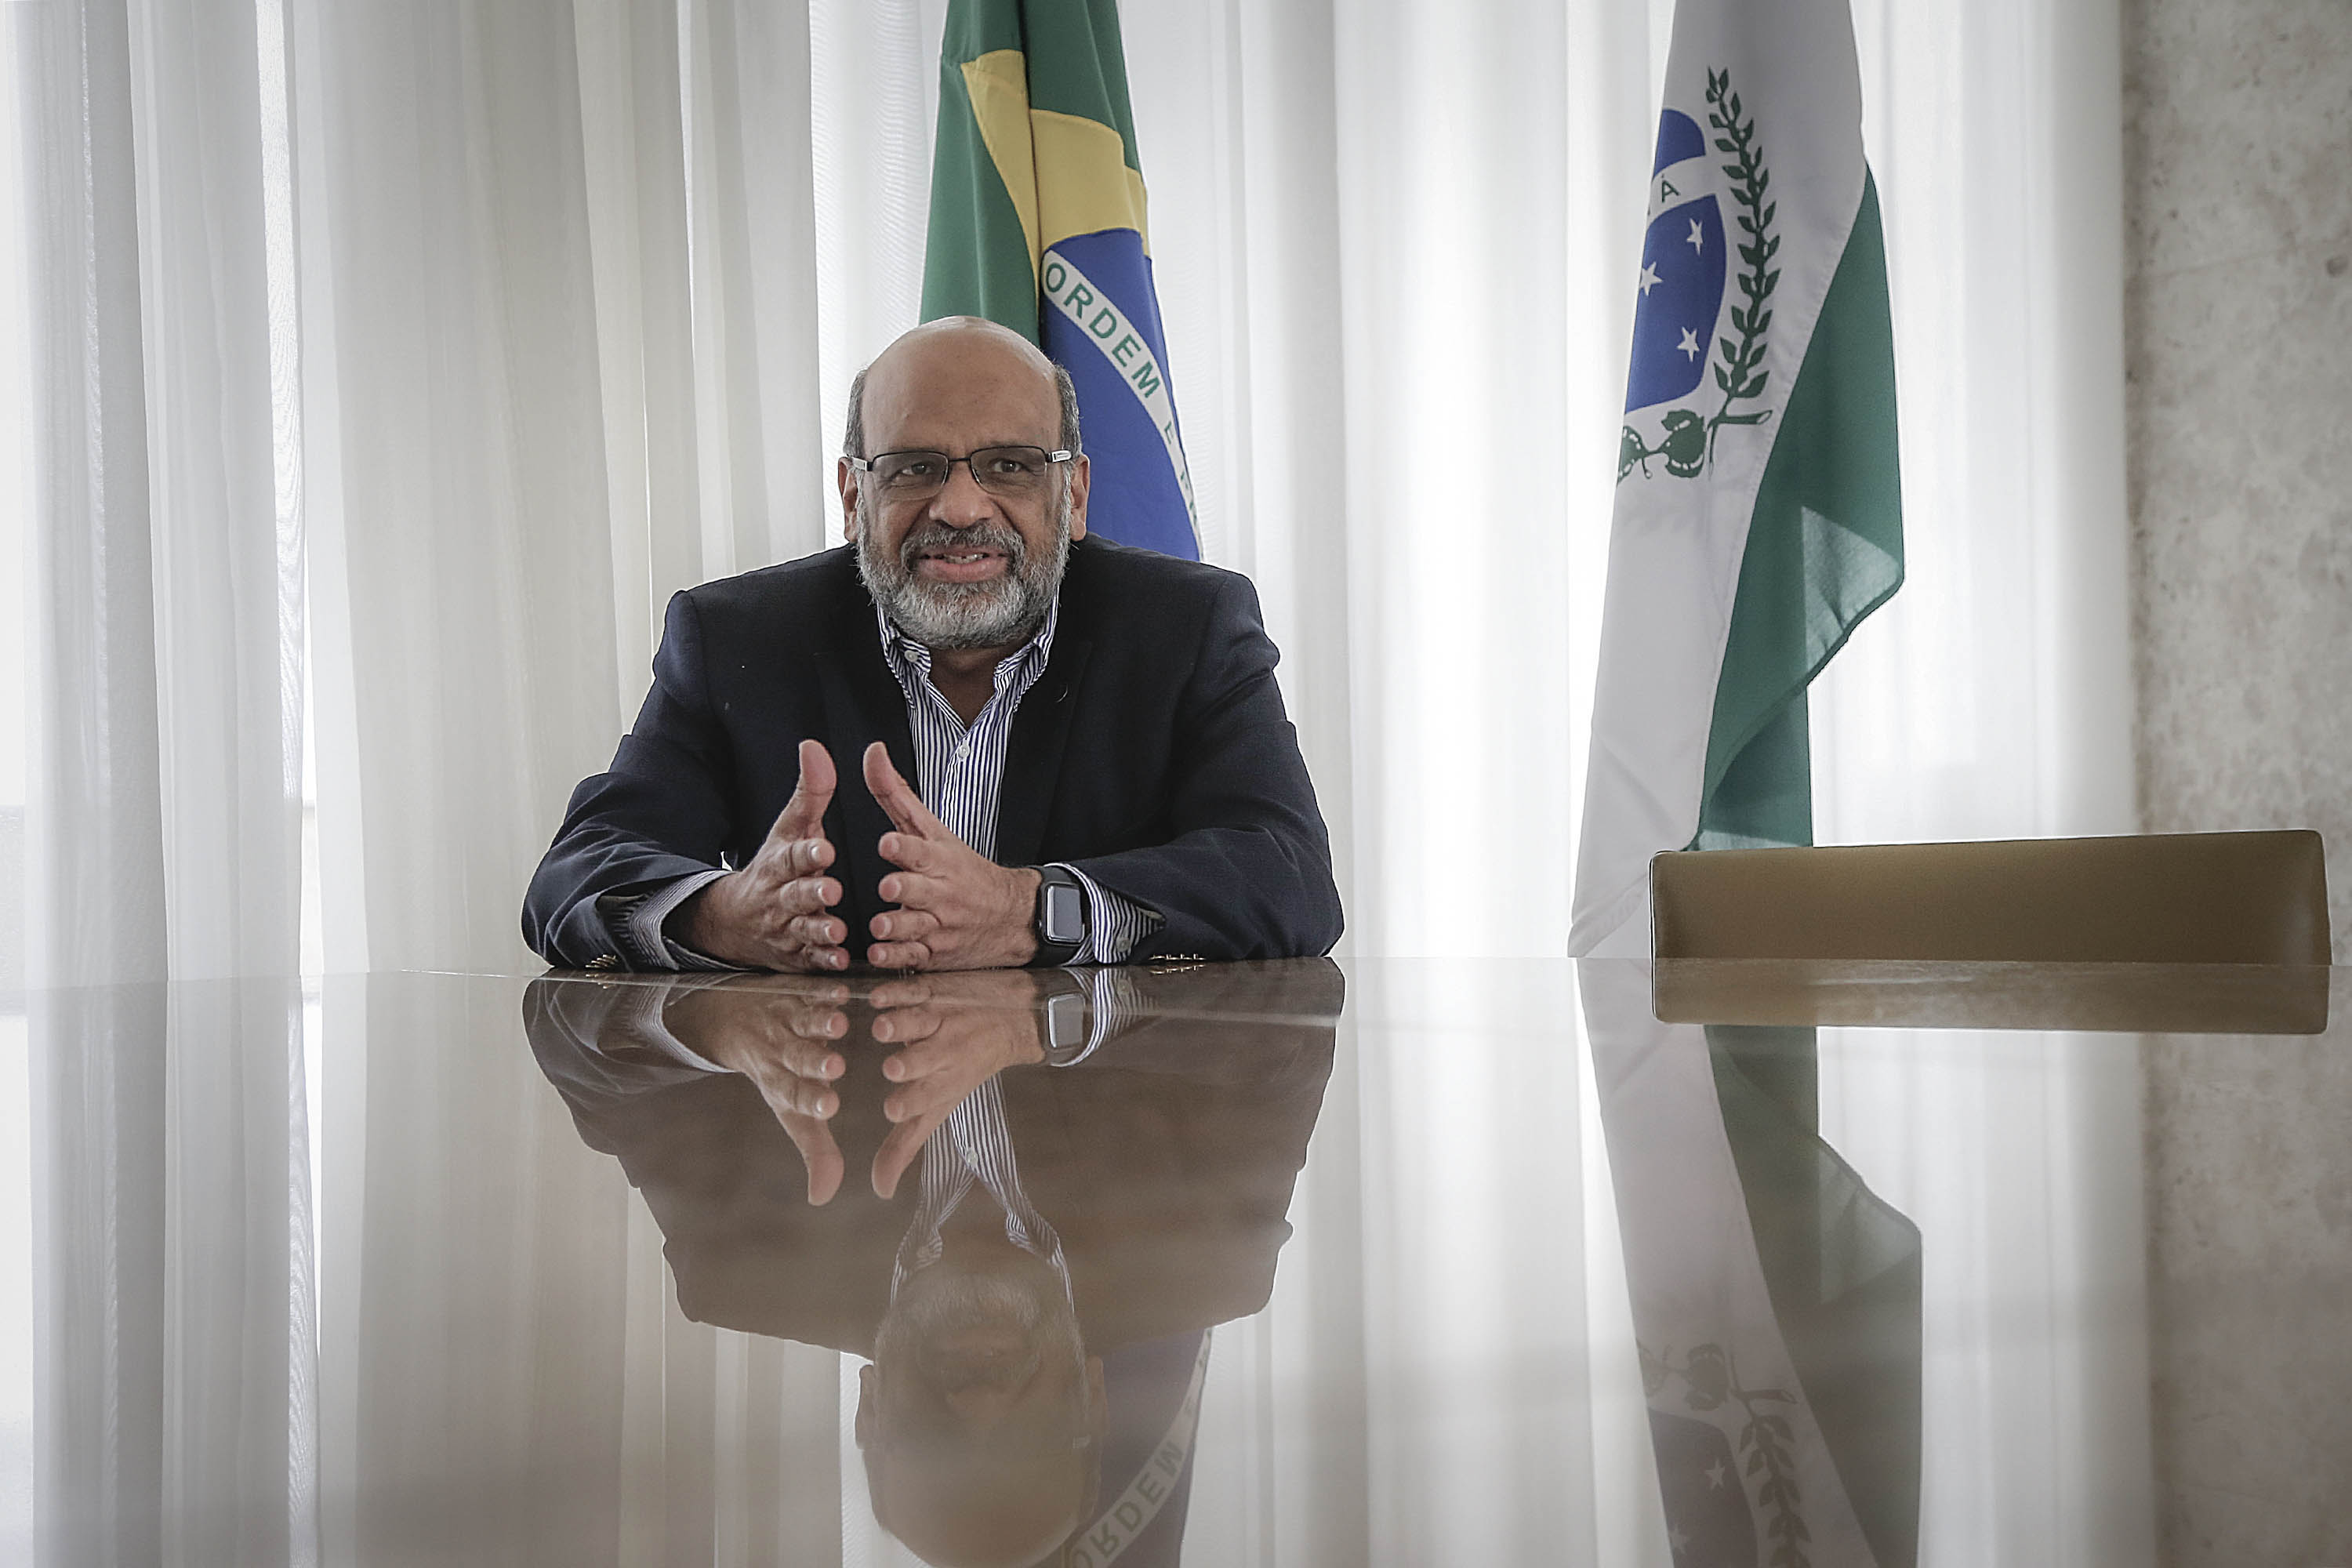 Paraná moderniza gestão fiscal e prepara novos programas de transparência das contas